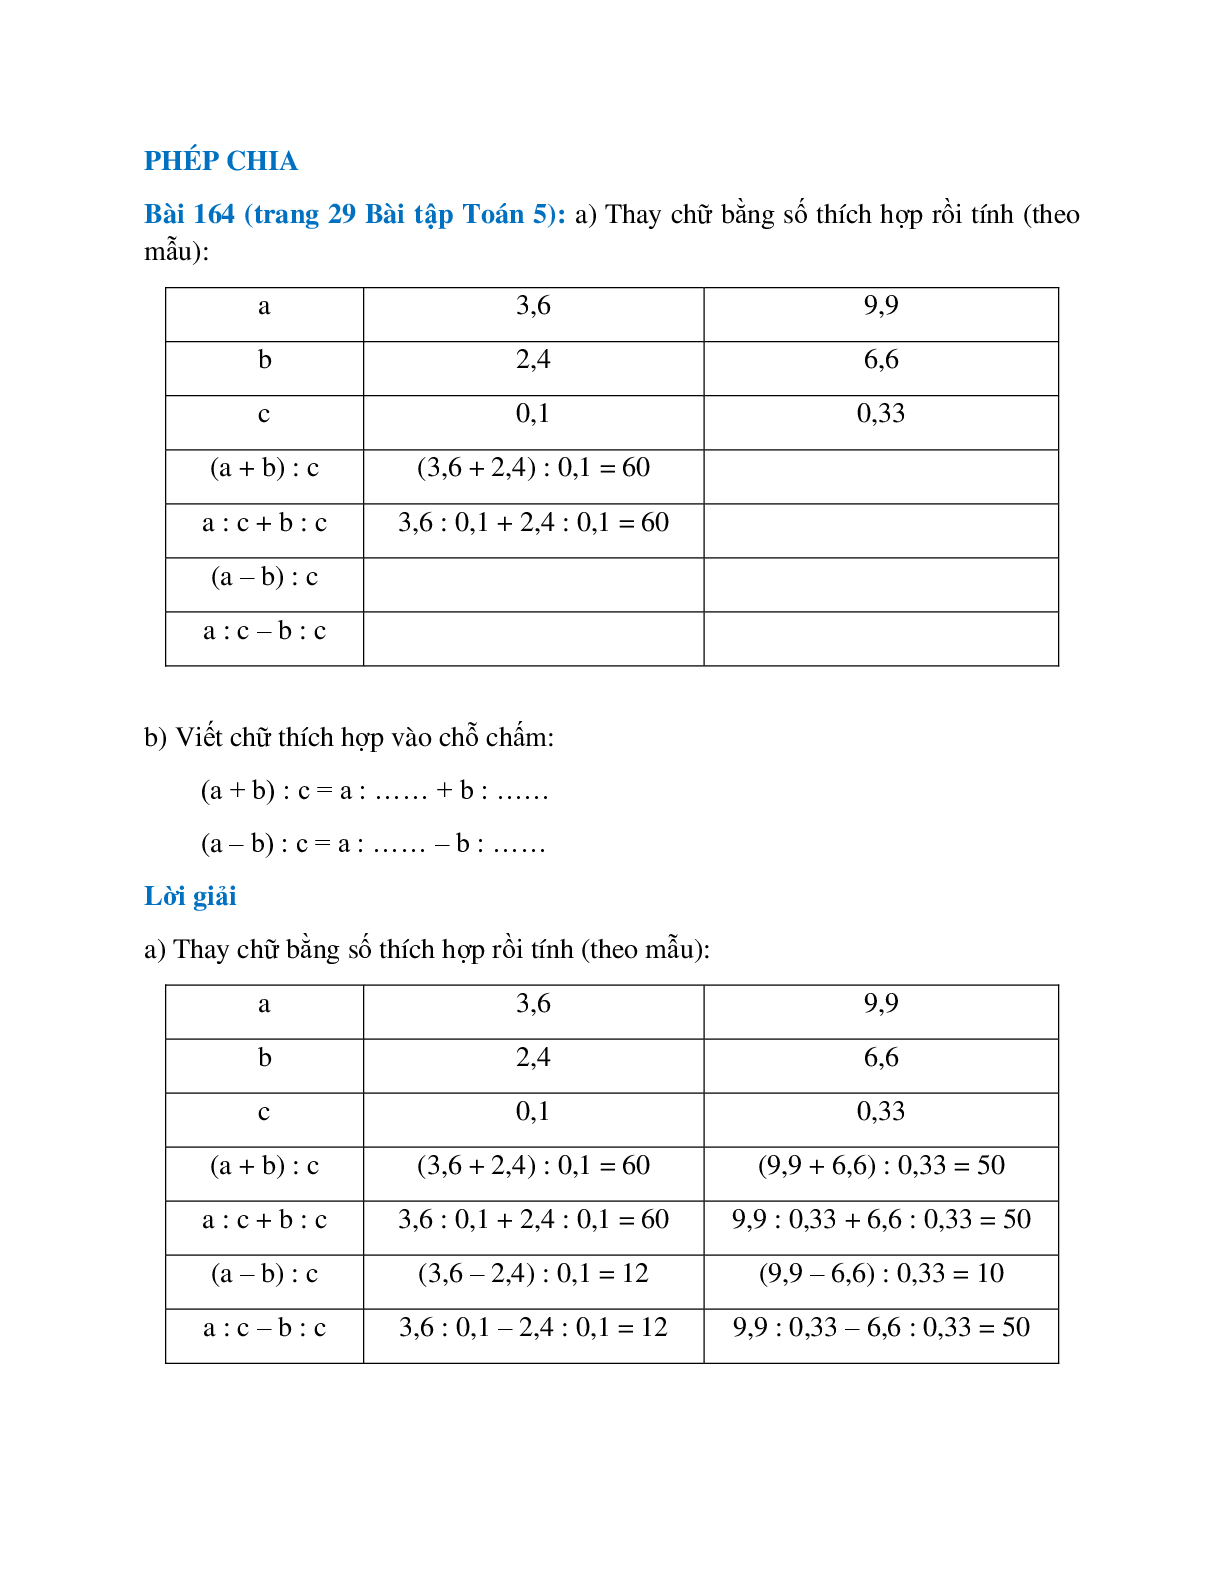 Thay chữ bằng số thích hợp rồi tính theo mẫu (trang 1)